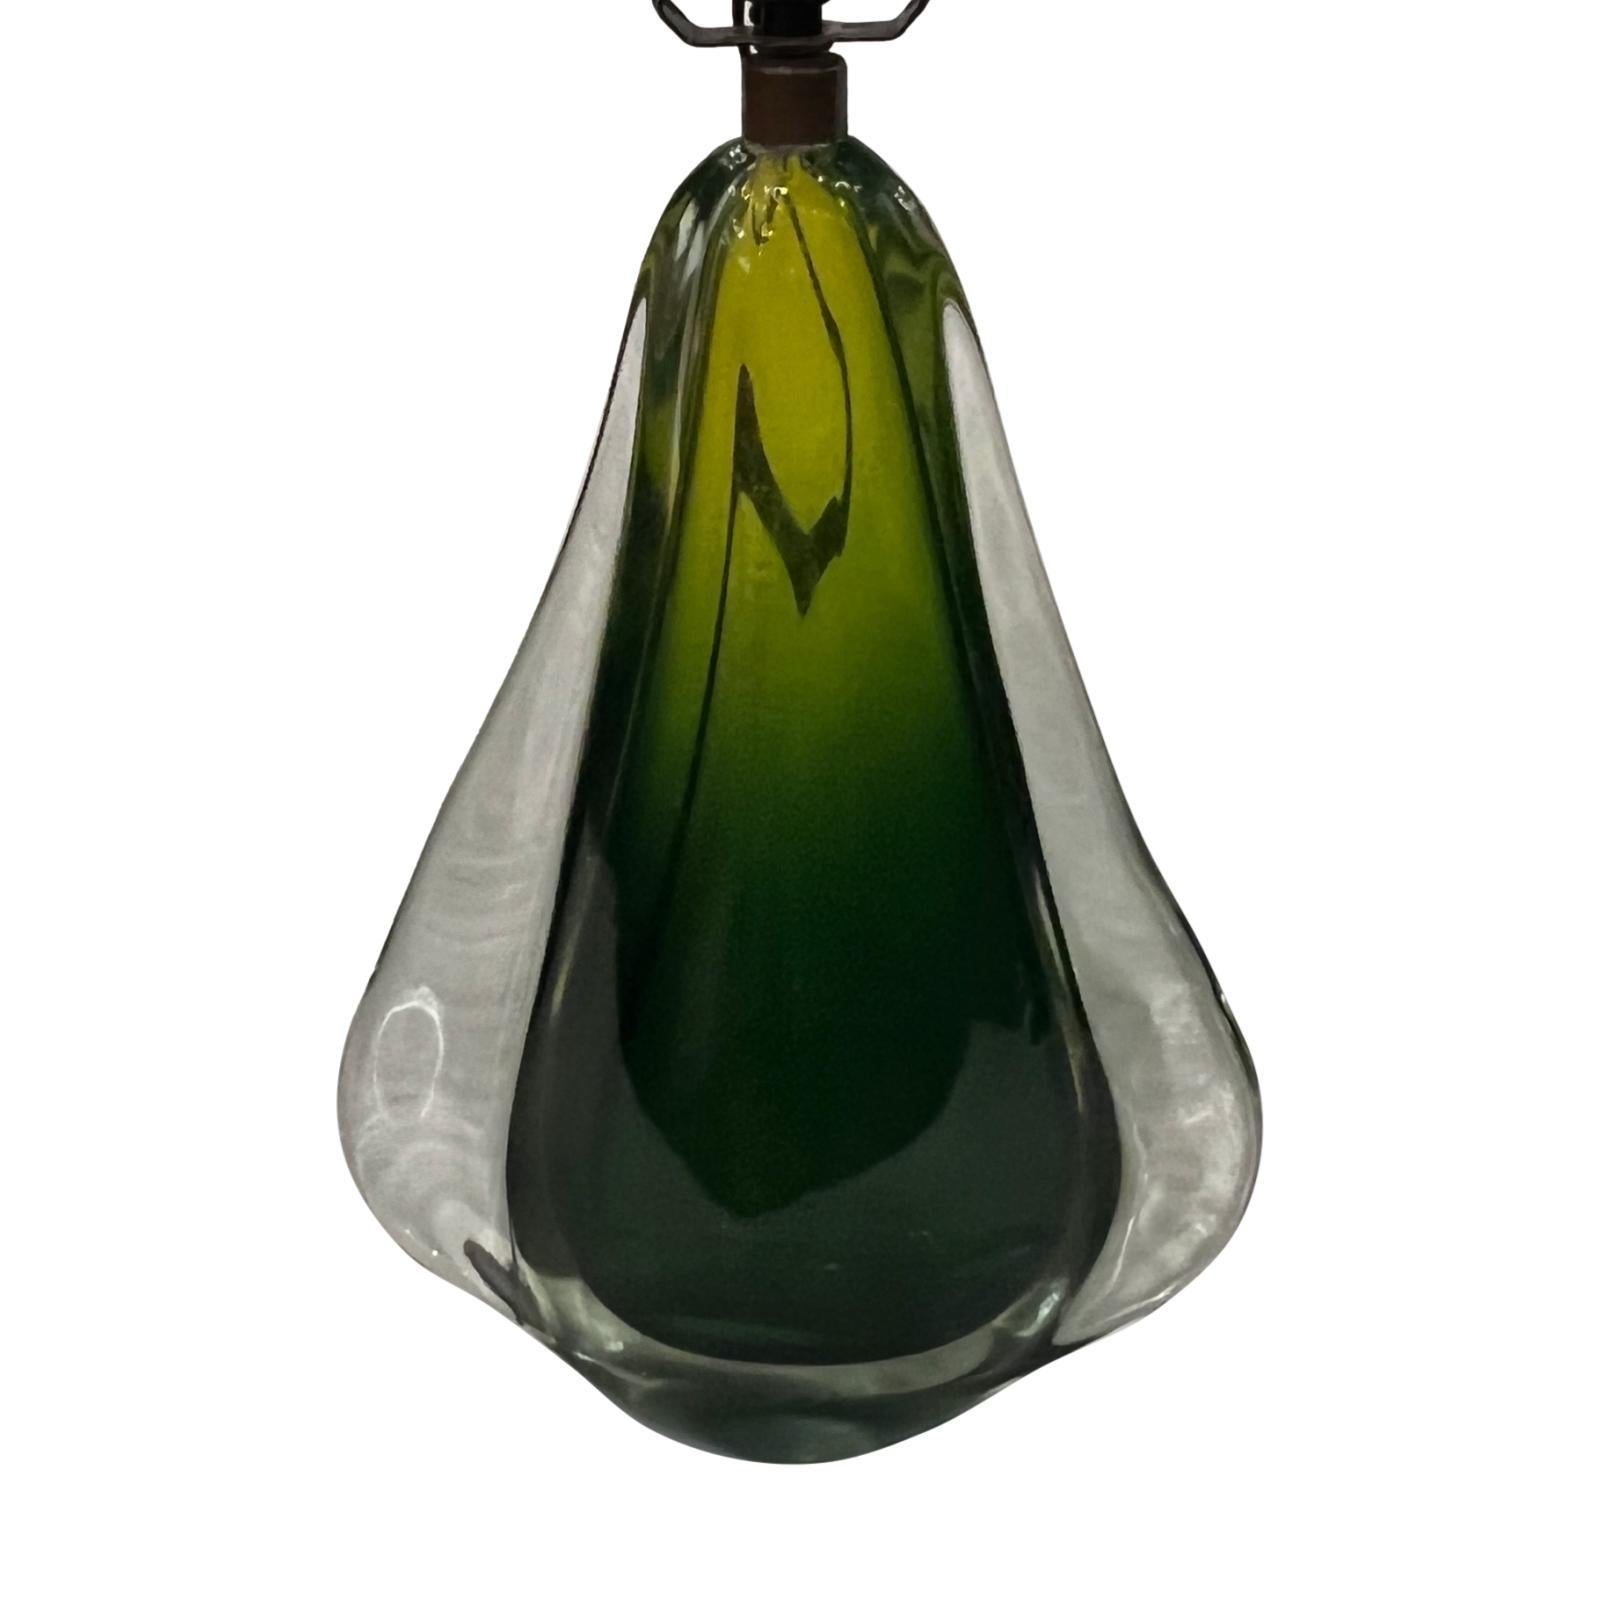 Une lampe de table italienne en verre soufflé vert et transparent datant des années 1960.

Mesures :
Hauteur du corps : 13 pouces
Hauteur jusqu'au support de l'abat-jour : 23